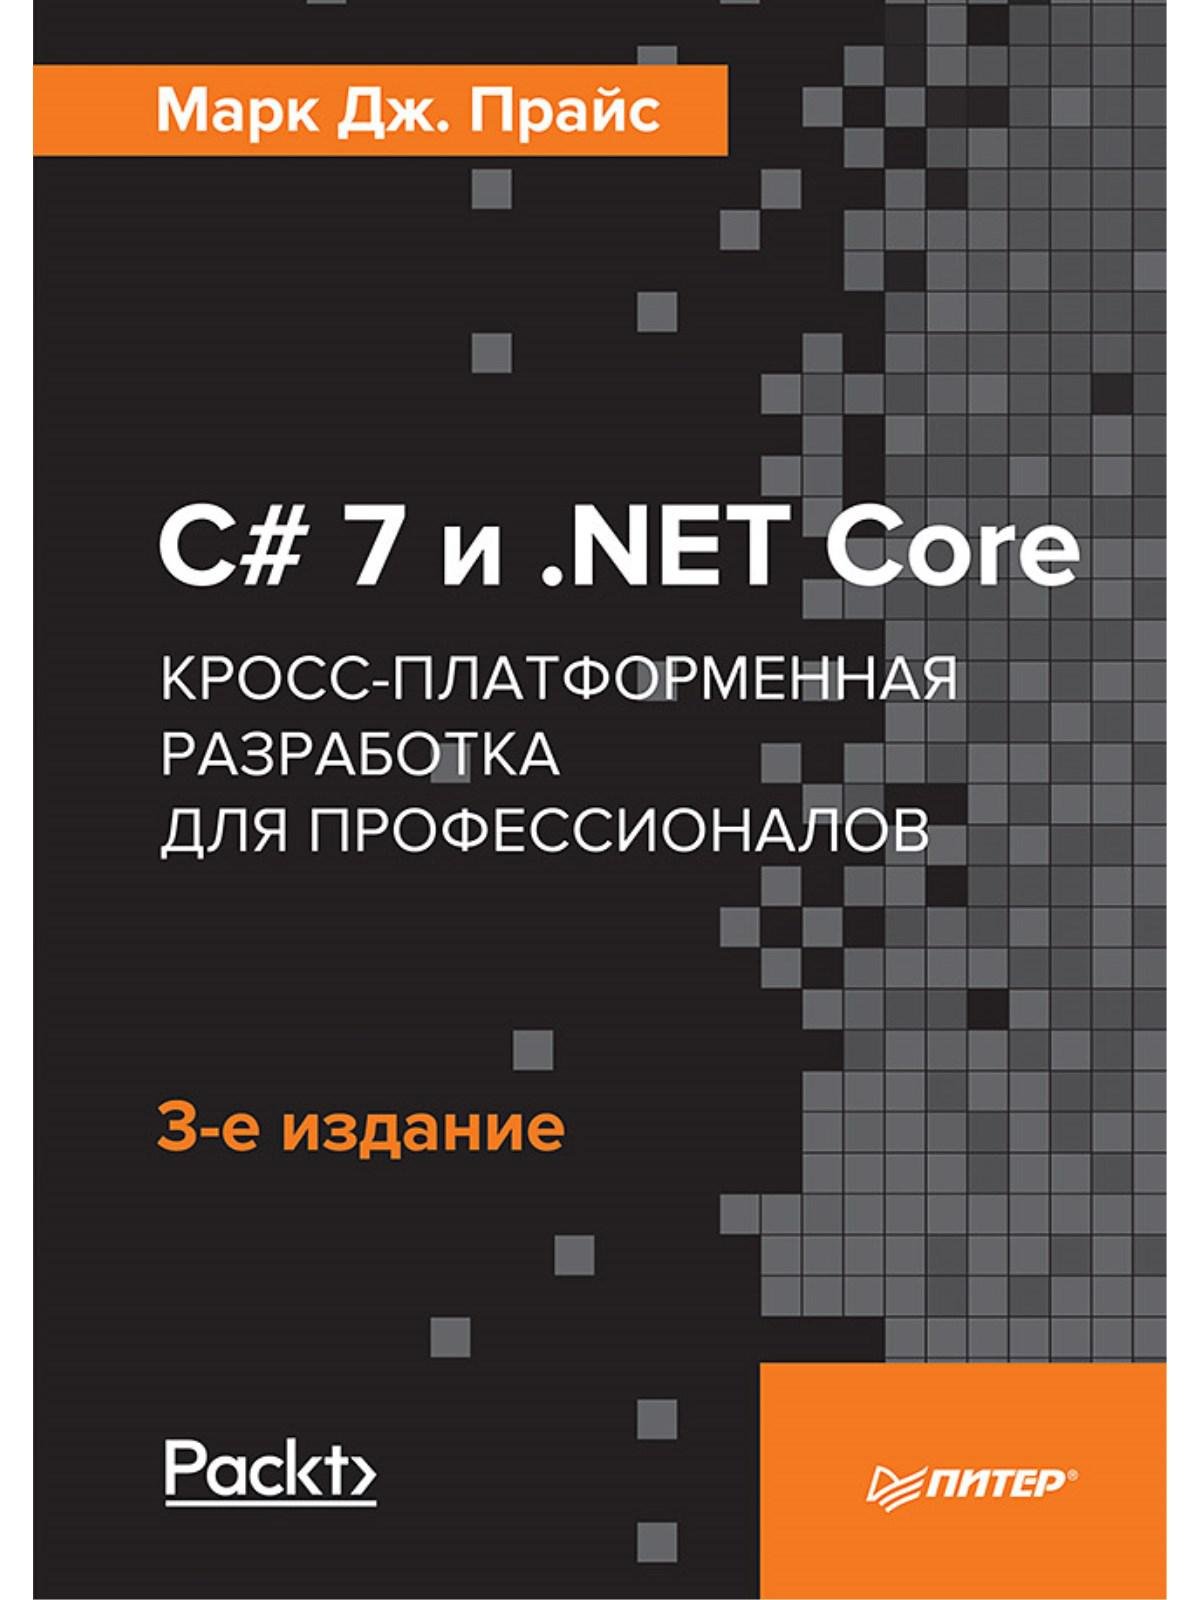 C# 7 и .NET Core. Кросс-платформенная разработка для профессионалов. 3-е издание. Прайс Марк Дж.